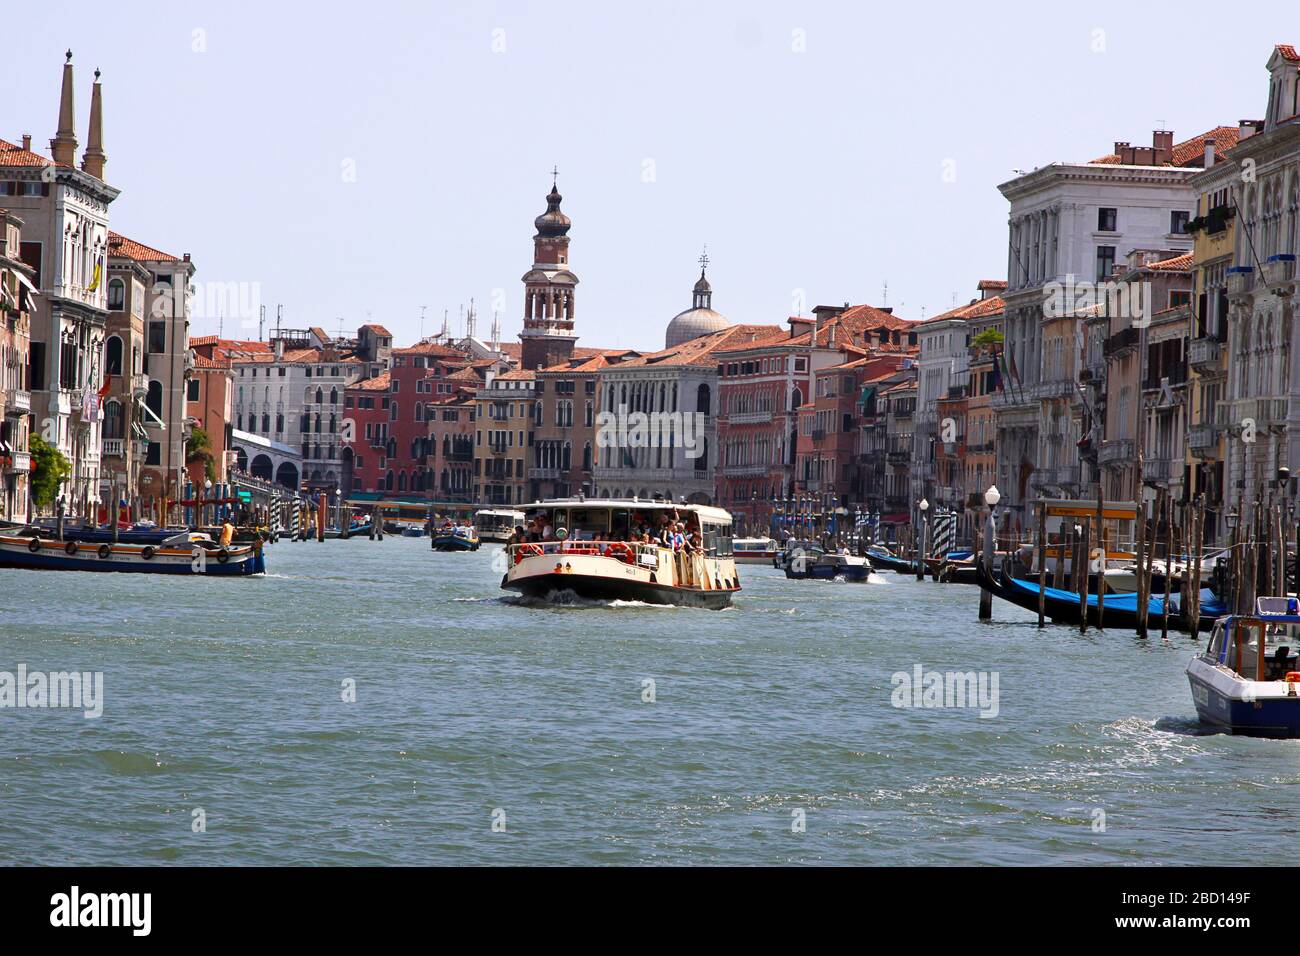 Italy, Venice - 13 June 2019: Vaporetto, vaporetti, water tram in Venice Stock Photo